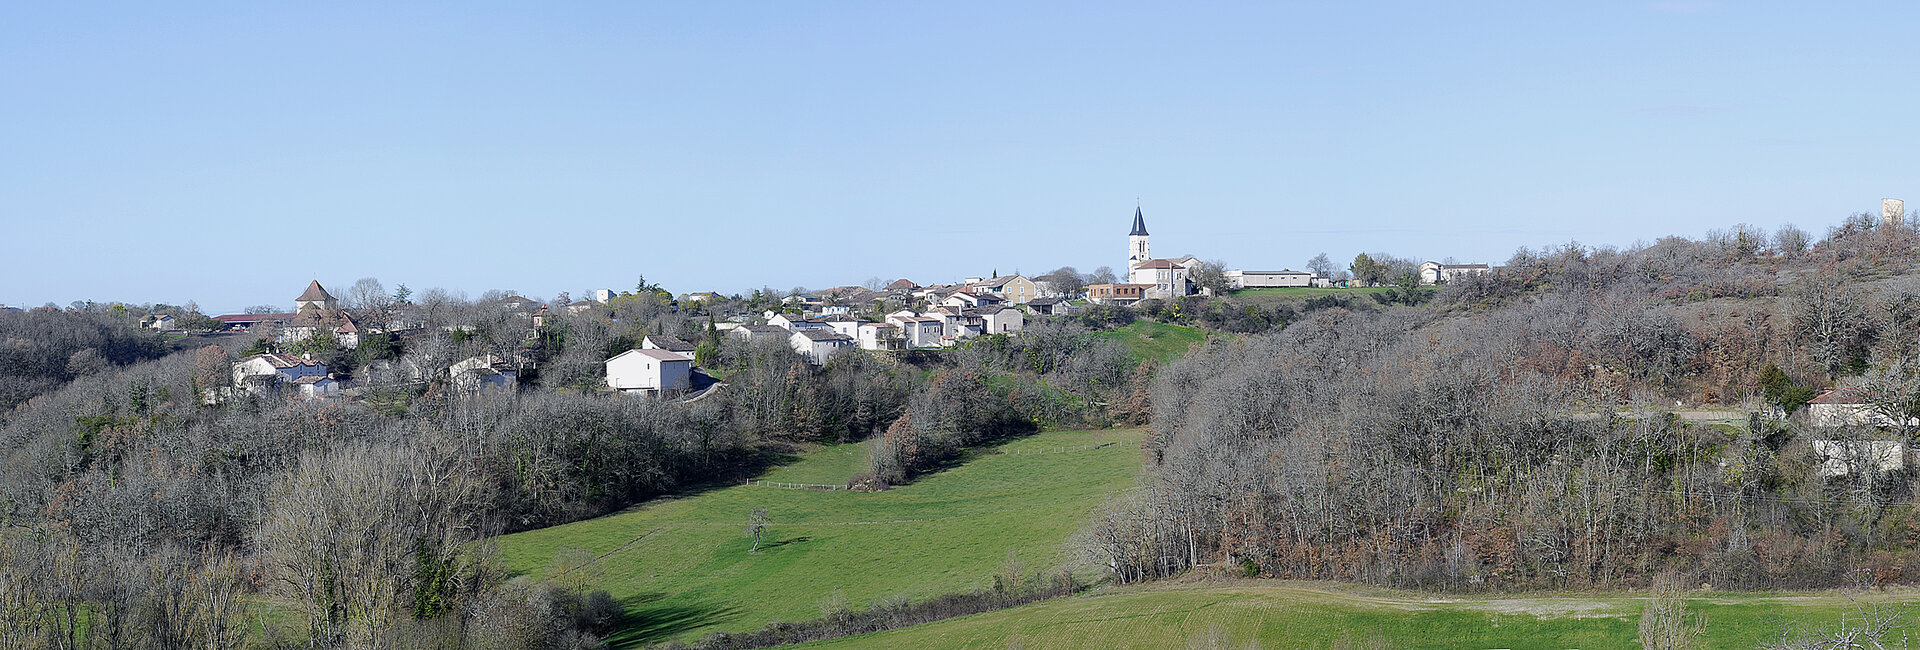 Le Conseil Municipal de Belfort du Quercy